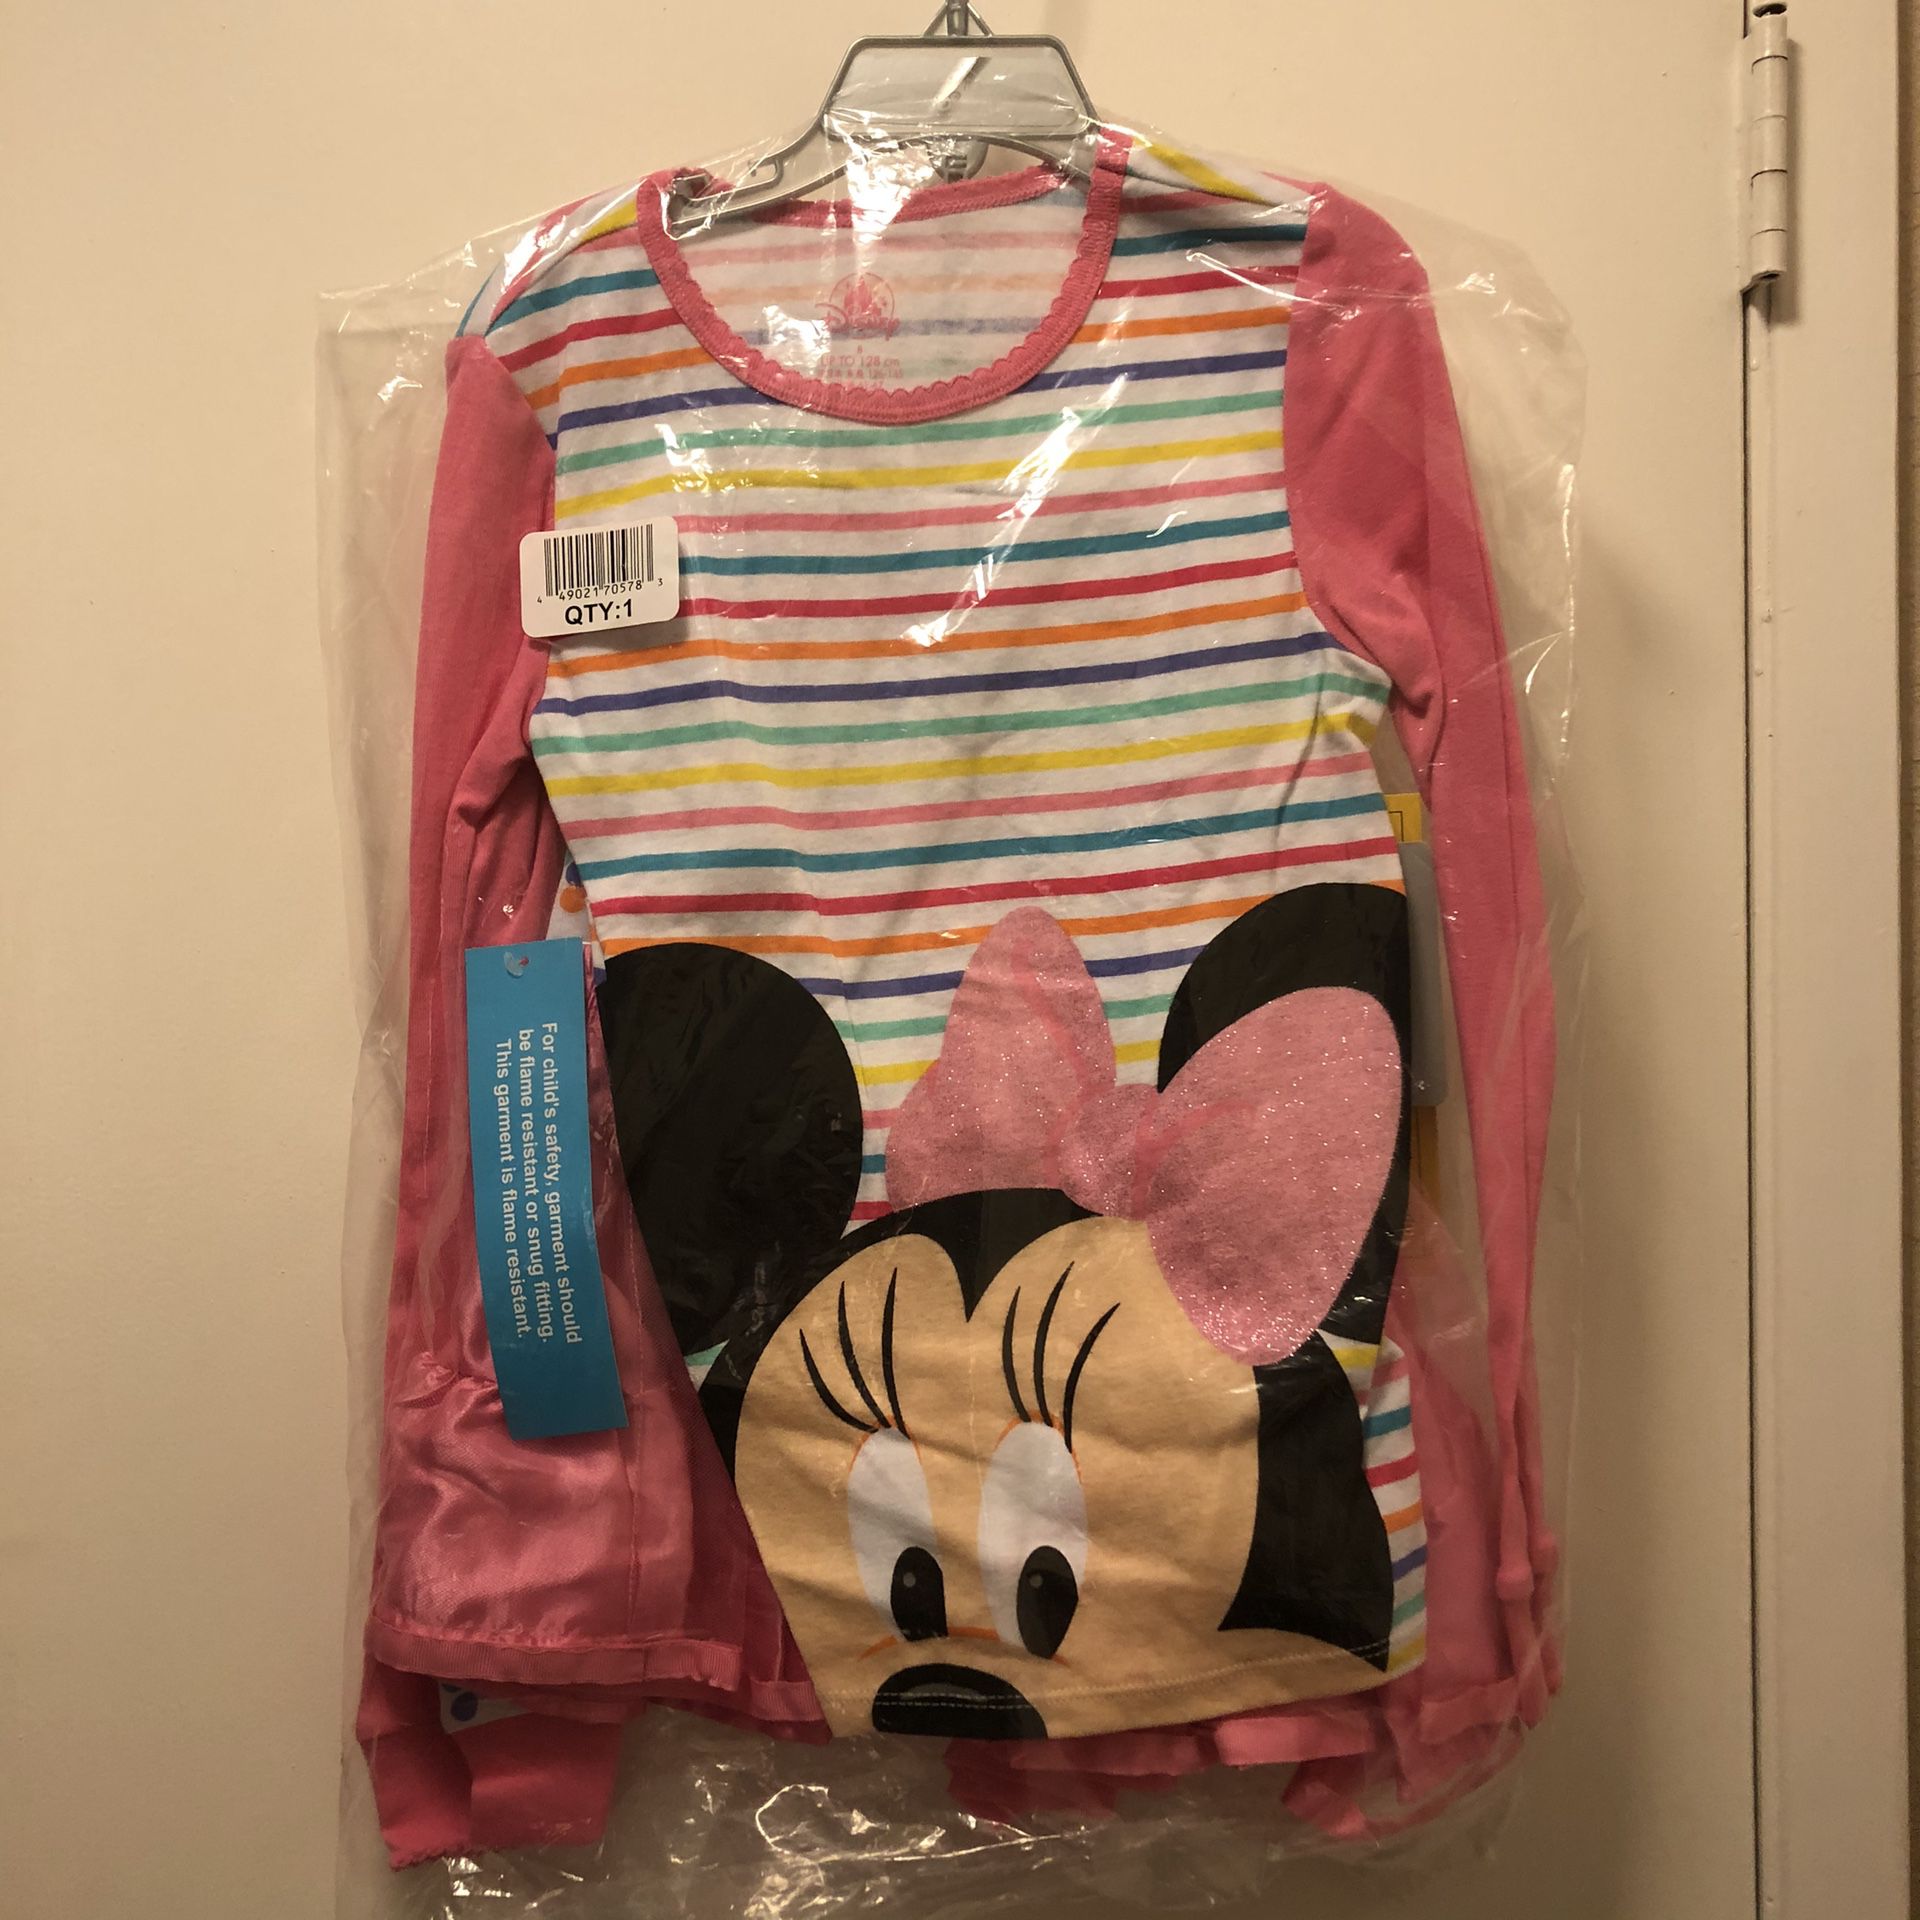 [New] Minnie Mouse PJ Pals set size 8